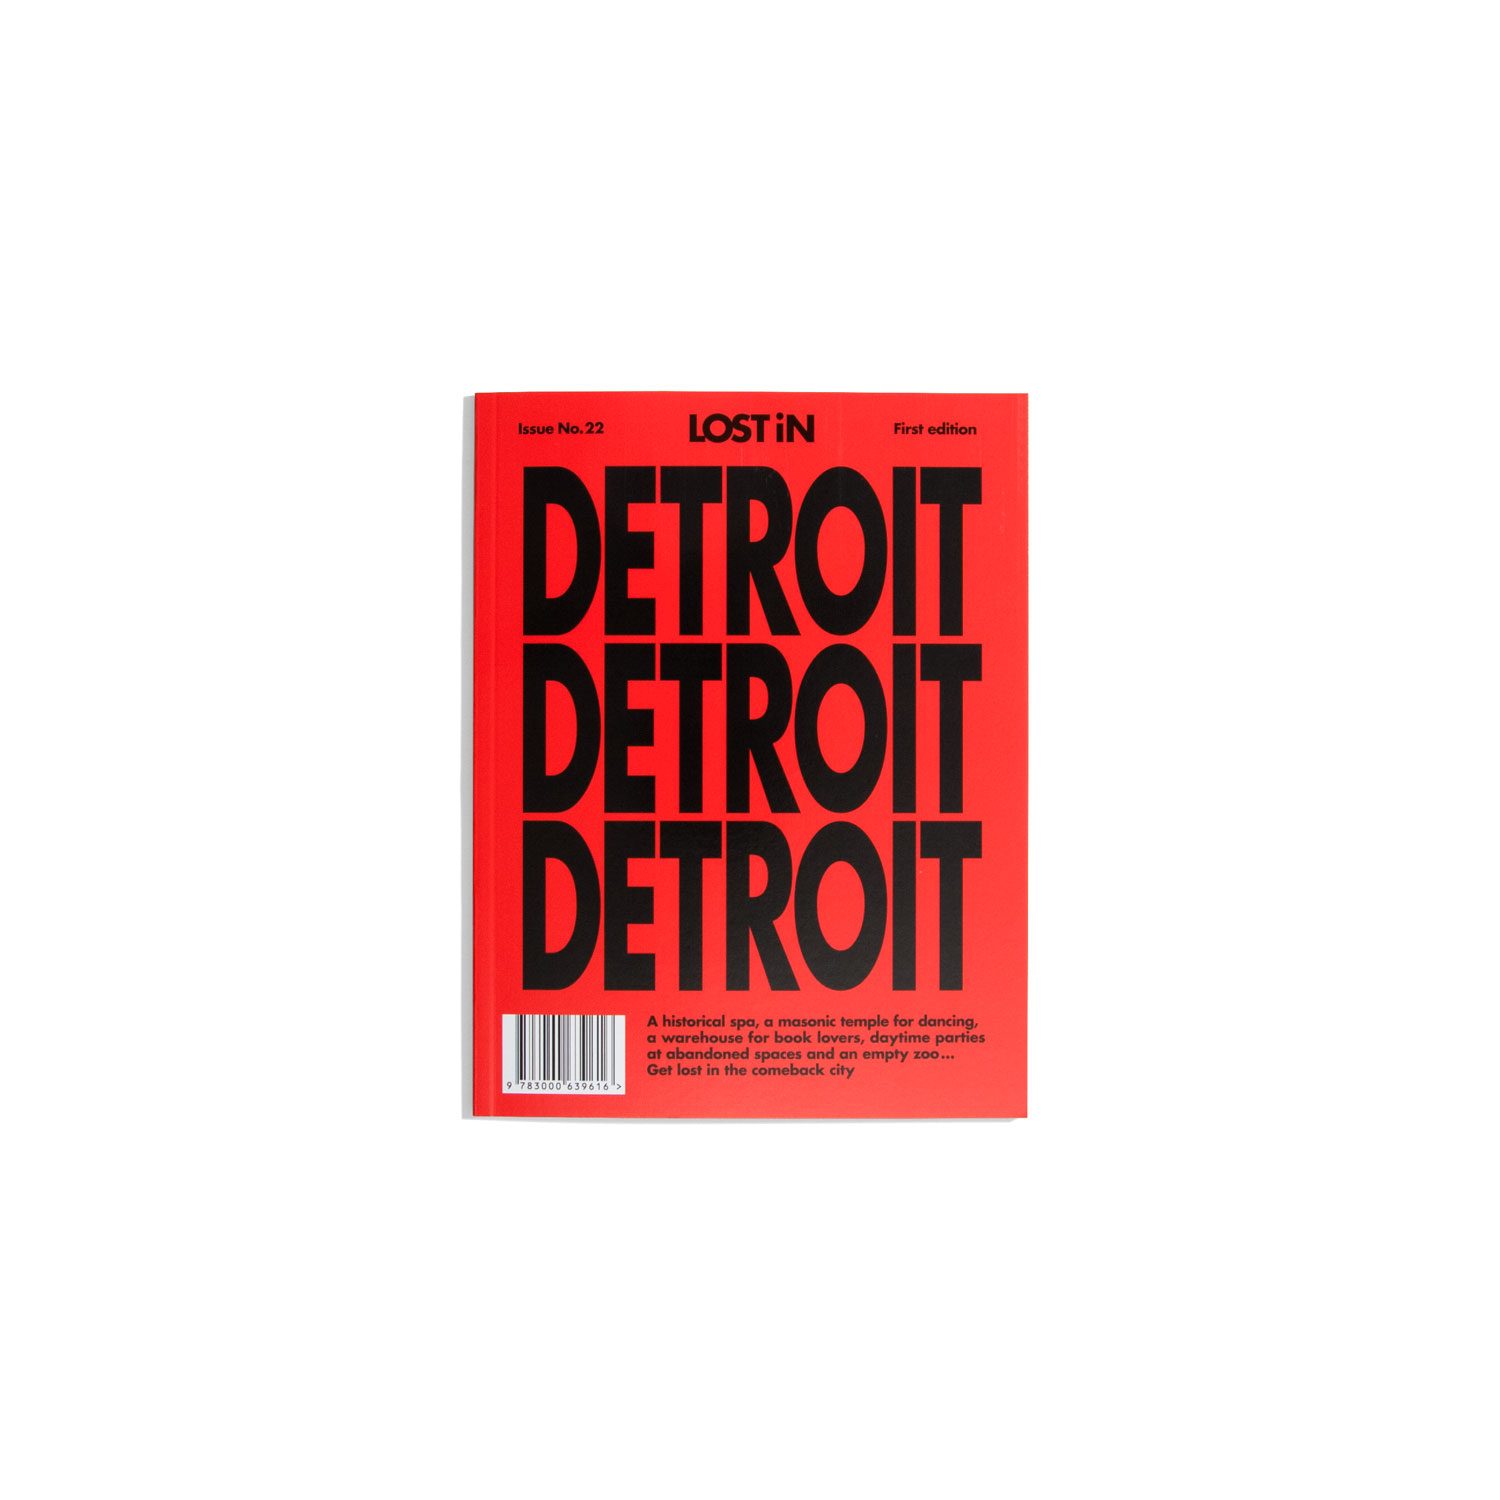 Lost in - Detroit